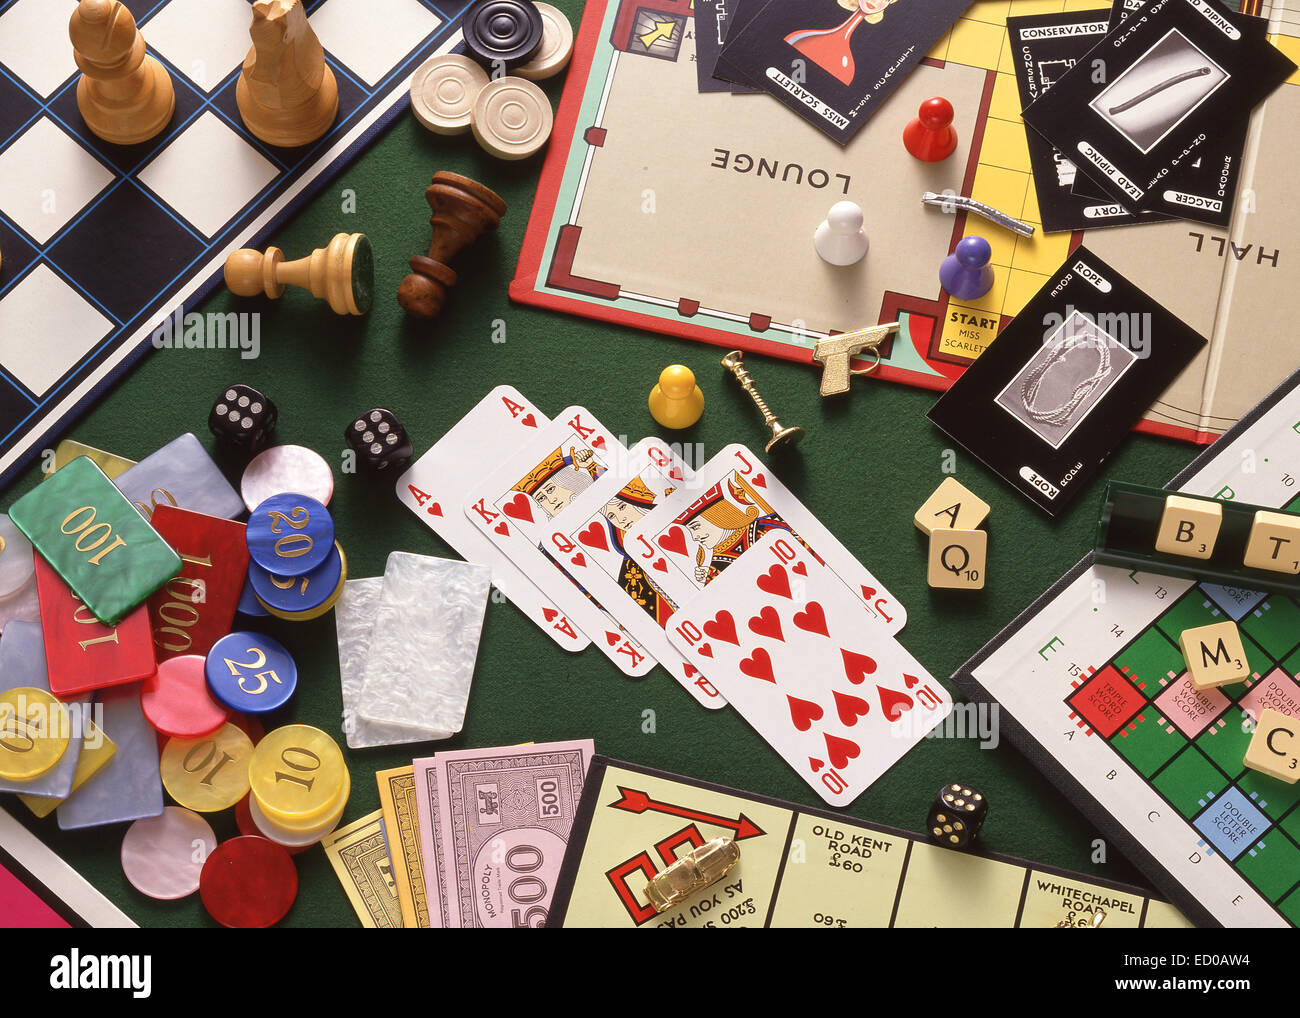 Still life (selección de juegos de mesa, ajedrez, Monopoly, Scrabble Cluedo) con cartas y fichas de juego Foto de stock